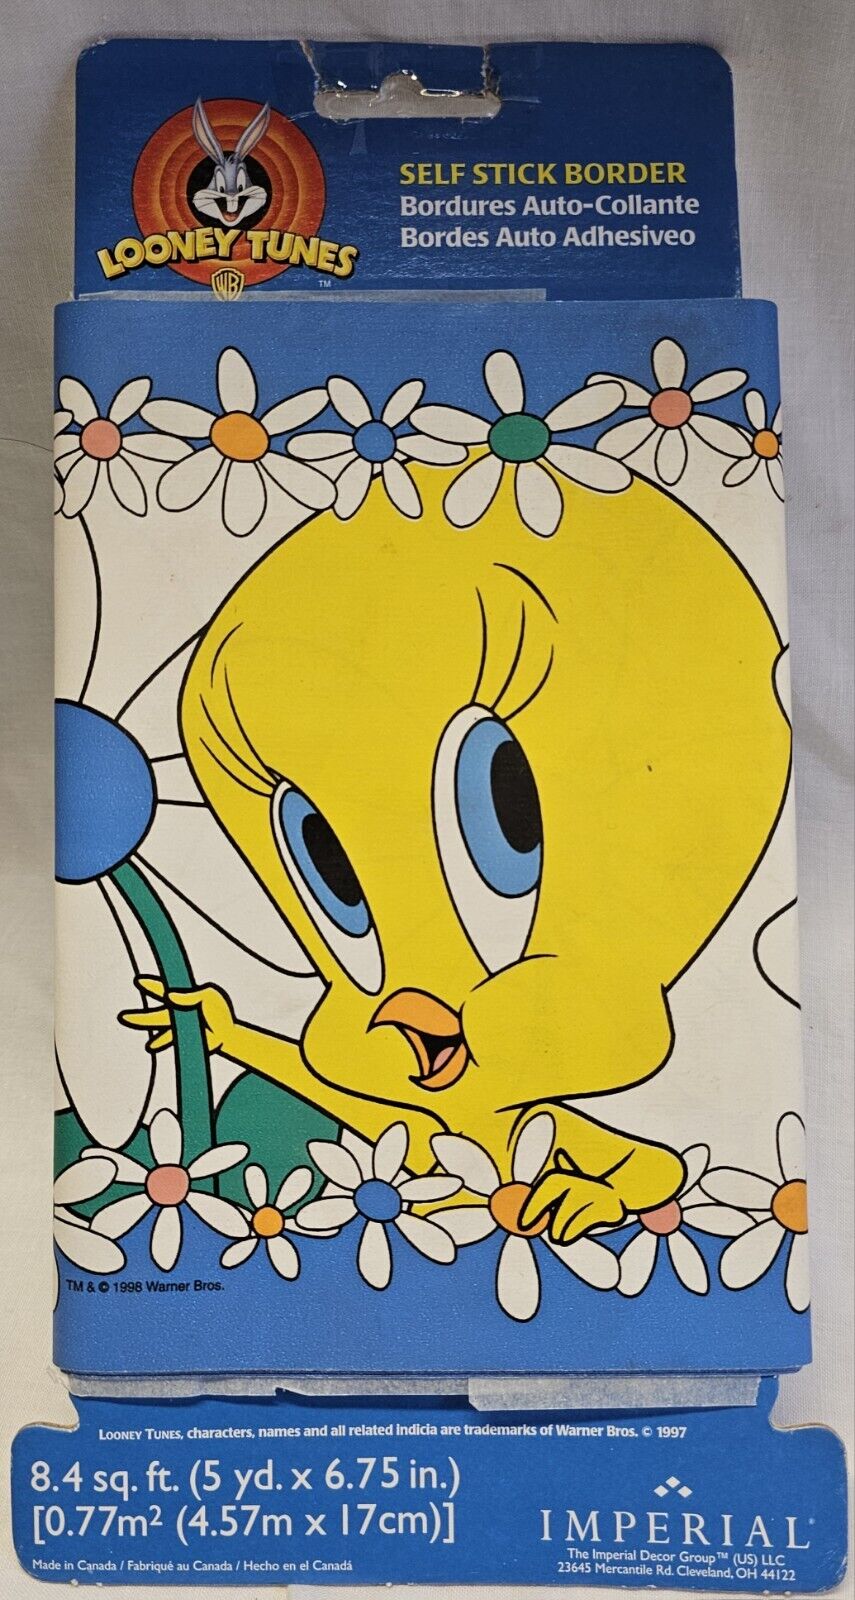 1997 Warner Bros Looney Tunes Tweety Bird Vinyl Wall Border Decal Sticker NOS